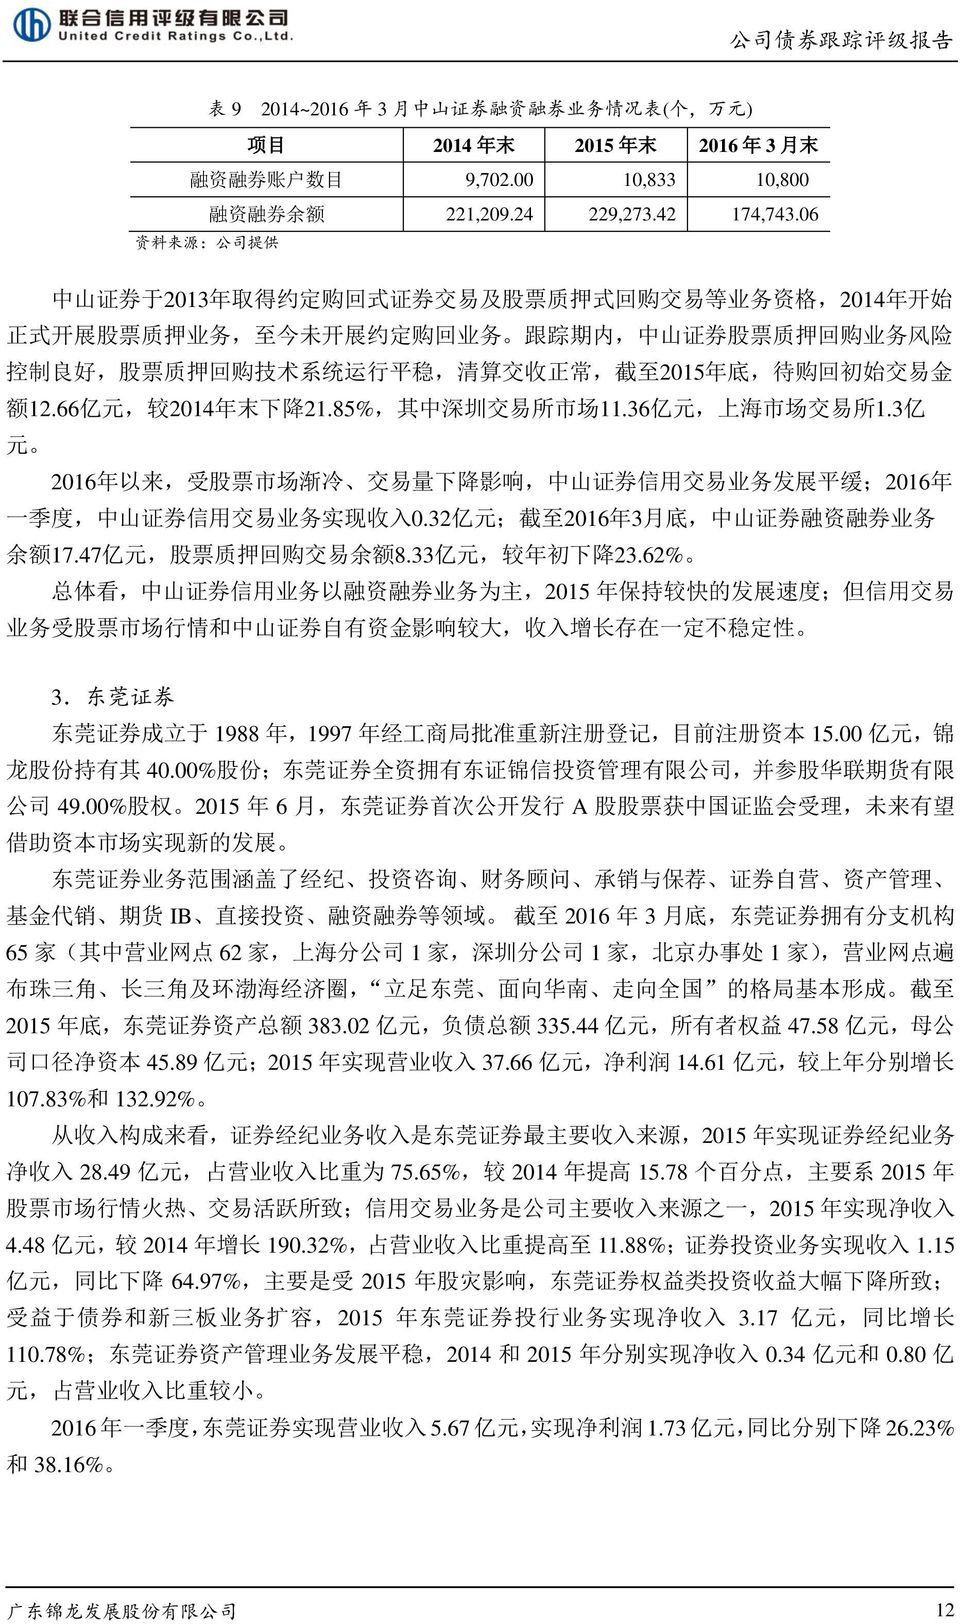 购 技 术 系 统 运 行 平 稳, 清 算 交 收 正 常, 截 至 2015 年 底, 待 购 回 初 始 交 易 金 额 12.66 亿 元, 较 2014 年 末 下 降 21.85%, 其 中 深 圳 交 易 所 市 场 11.36 亿 元, 上 海 市 场 交 易 所 1.